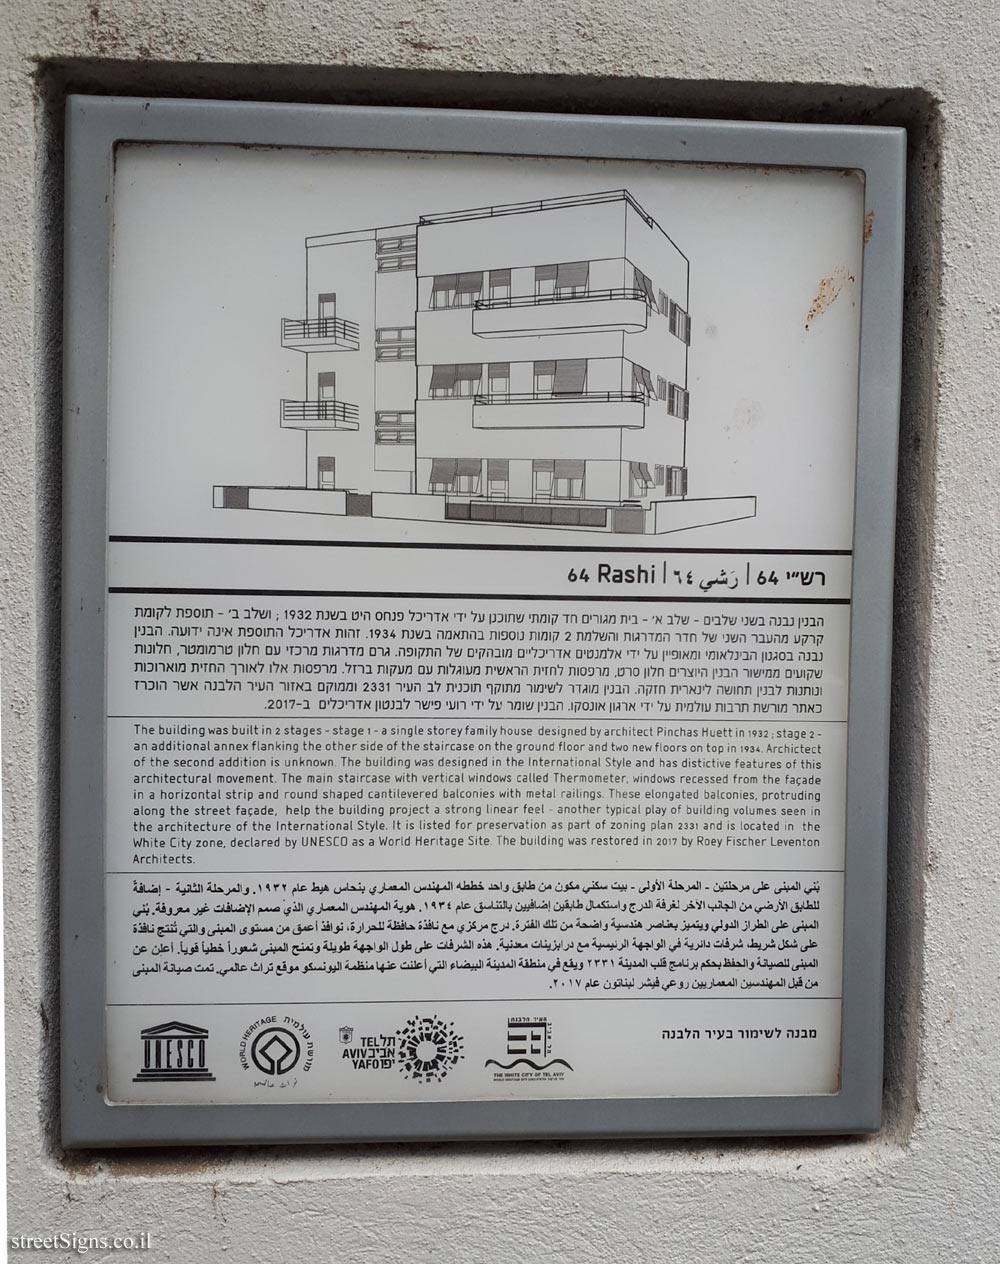 Tel Aviv - buildings for conservation - 64 Rashi